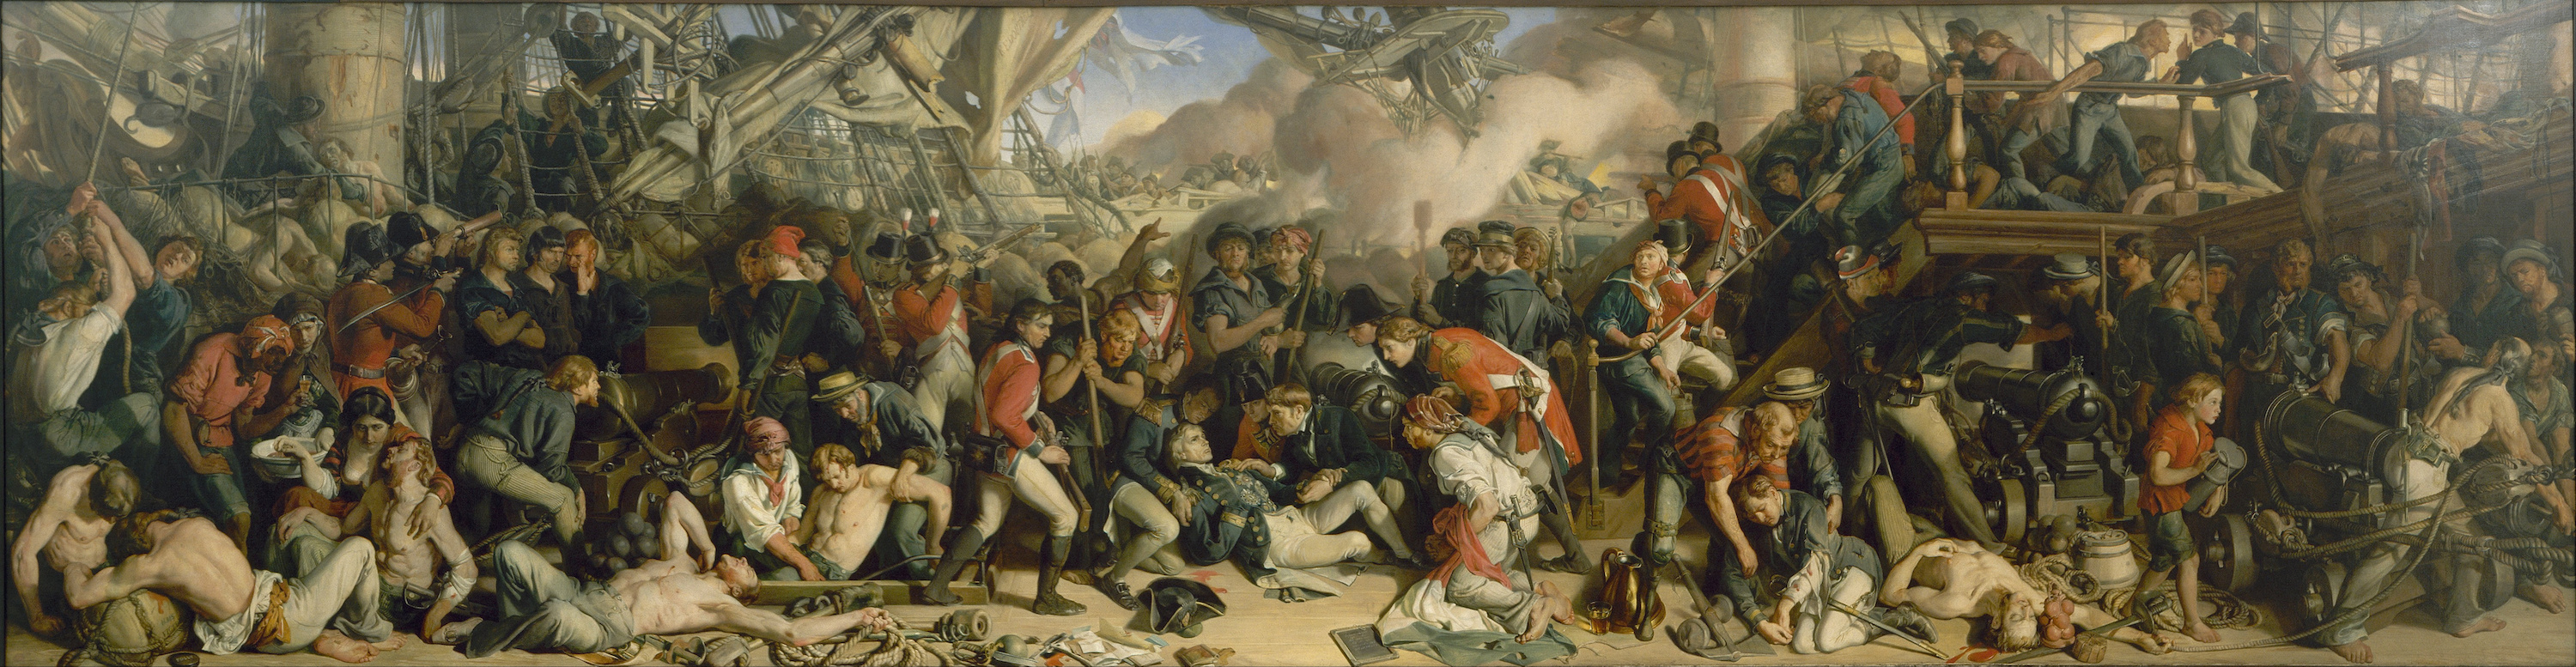 La mort de Nelson by Daniel Maclise - 1859–1861 